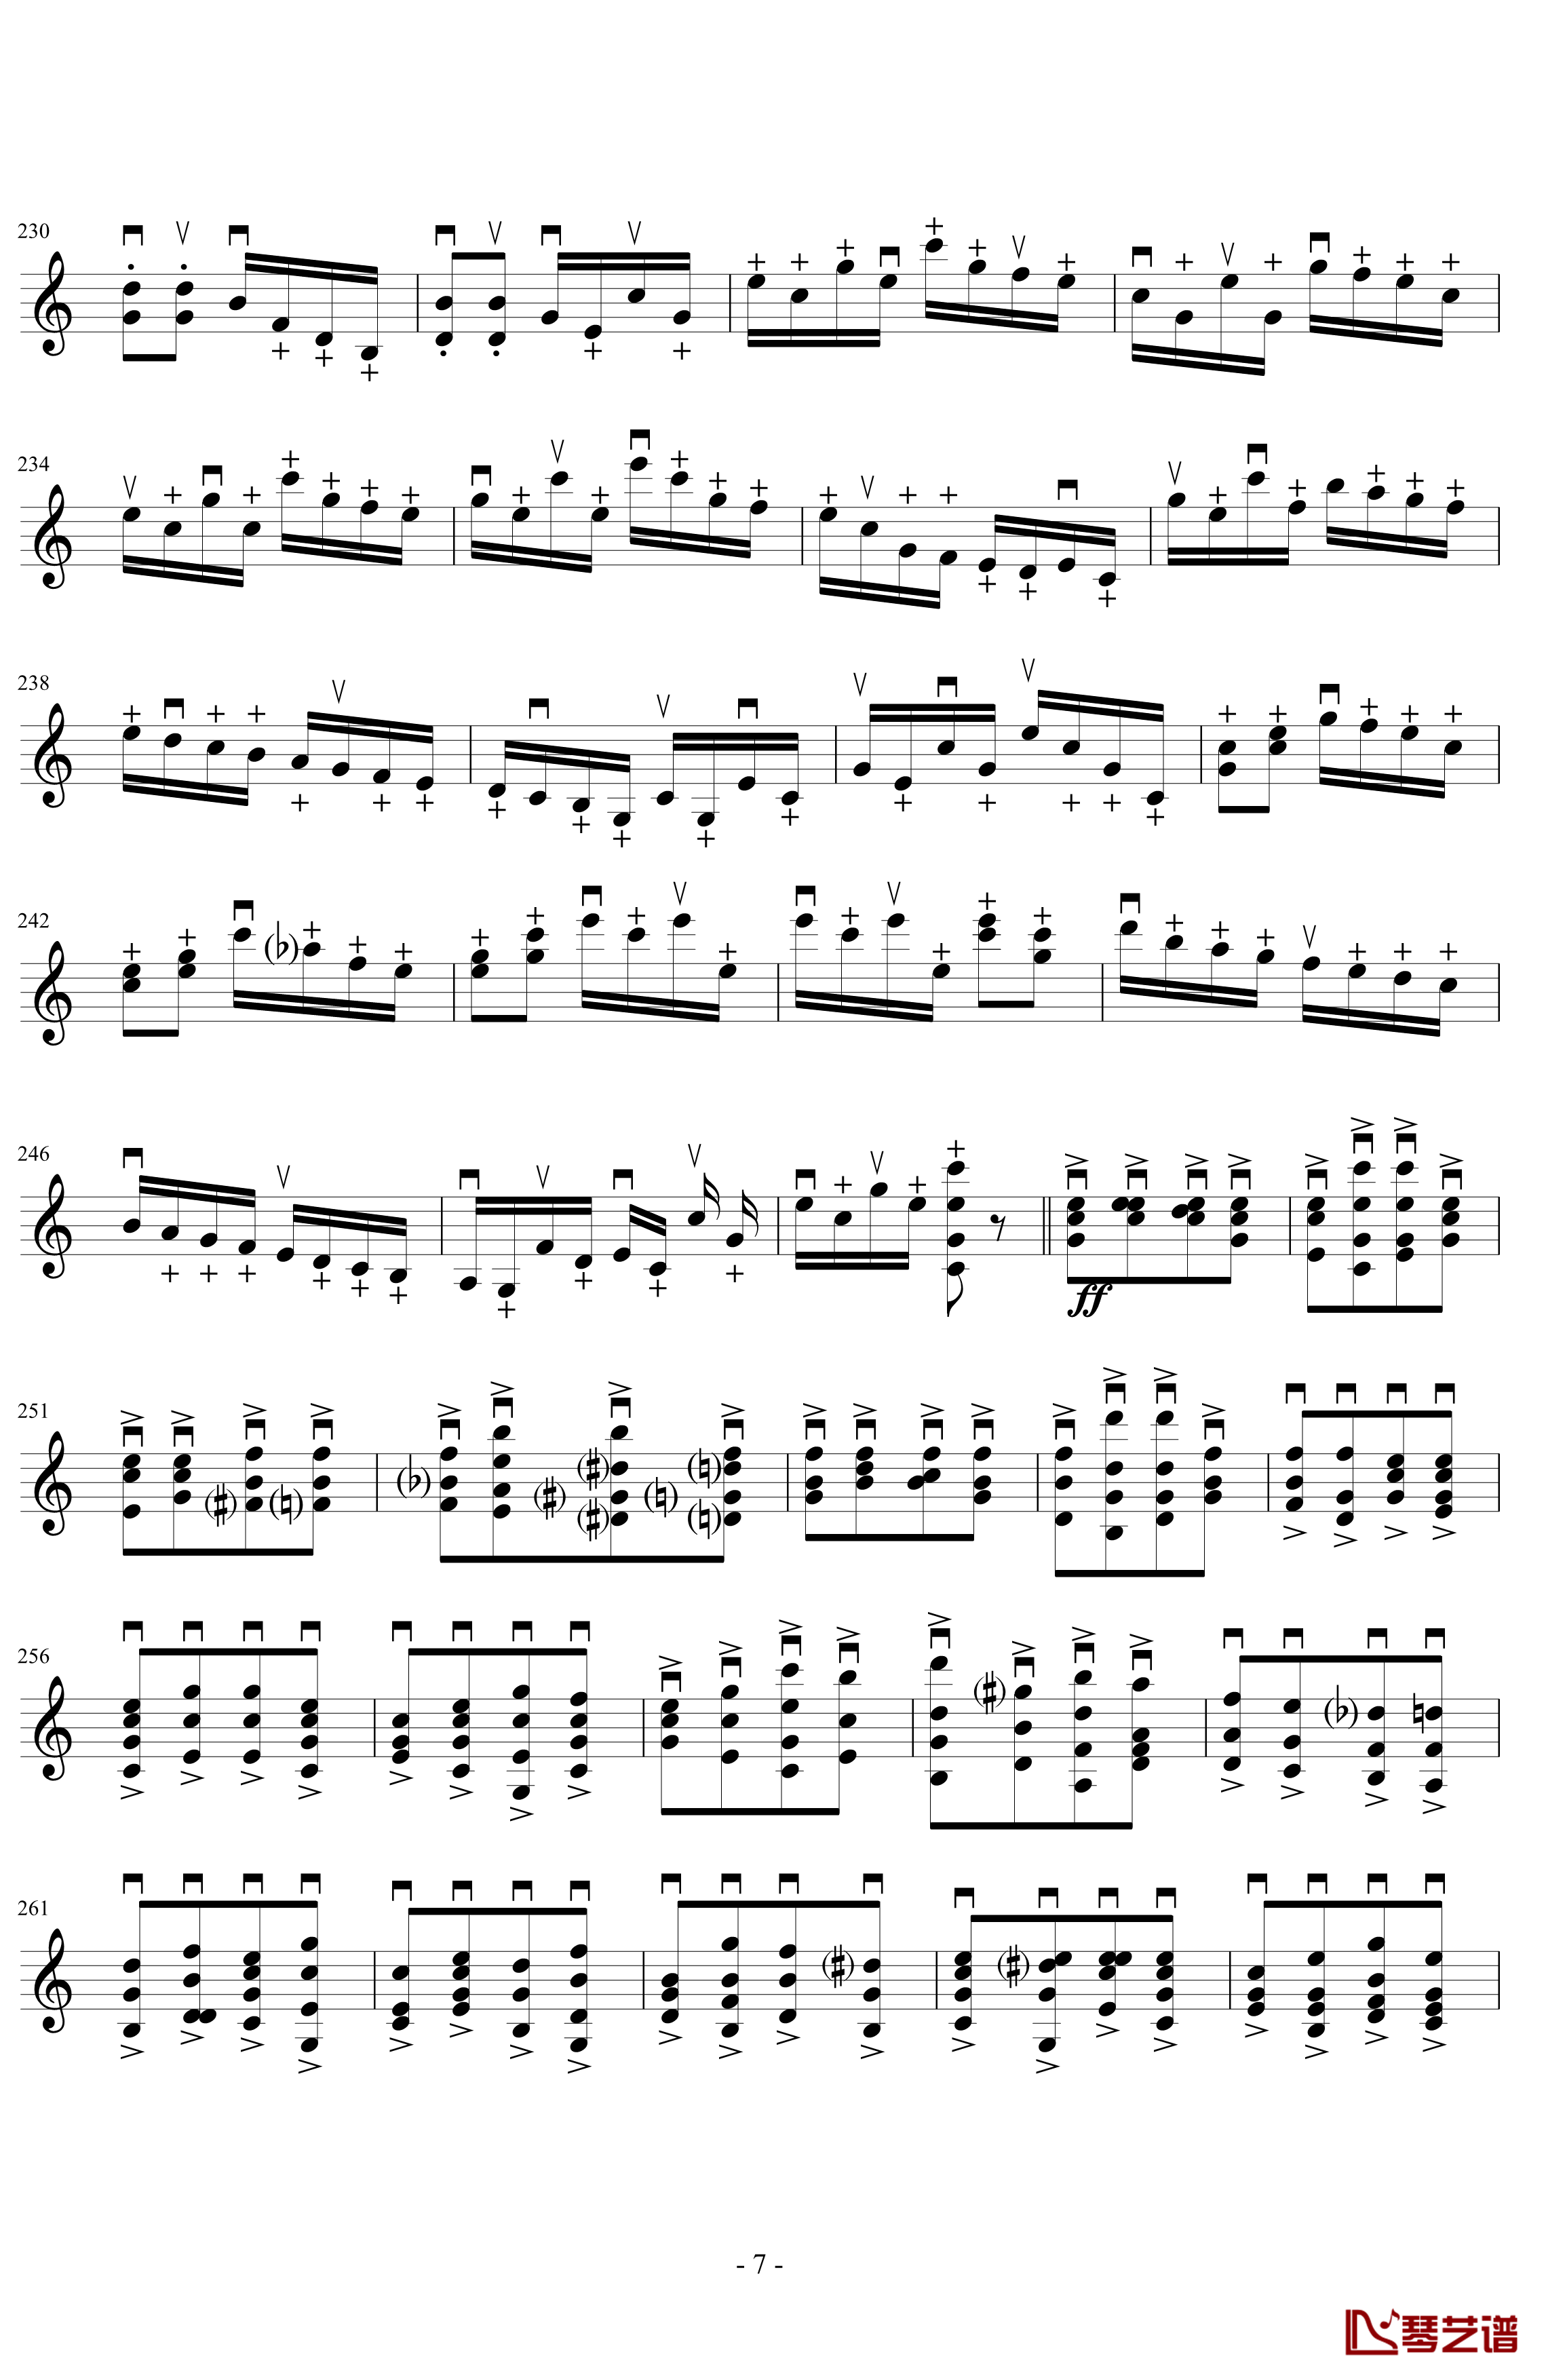 莫扎特主题炫技变奏曲钢琴谱-小提琴版-莫扎特7